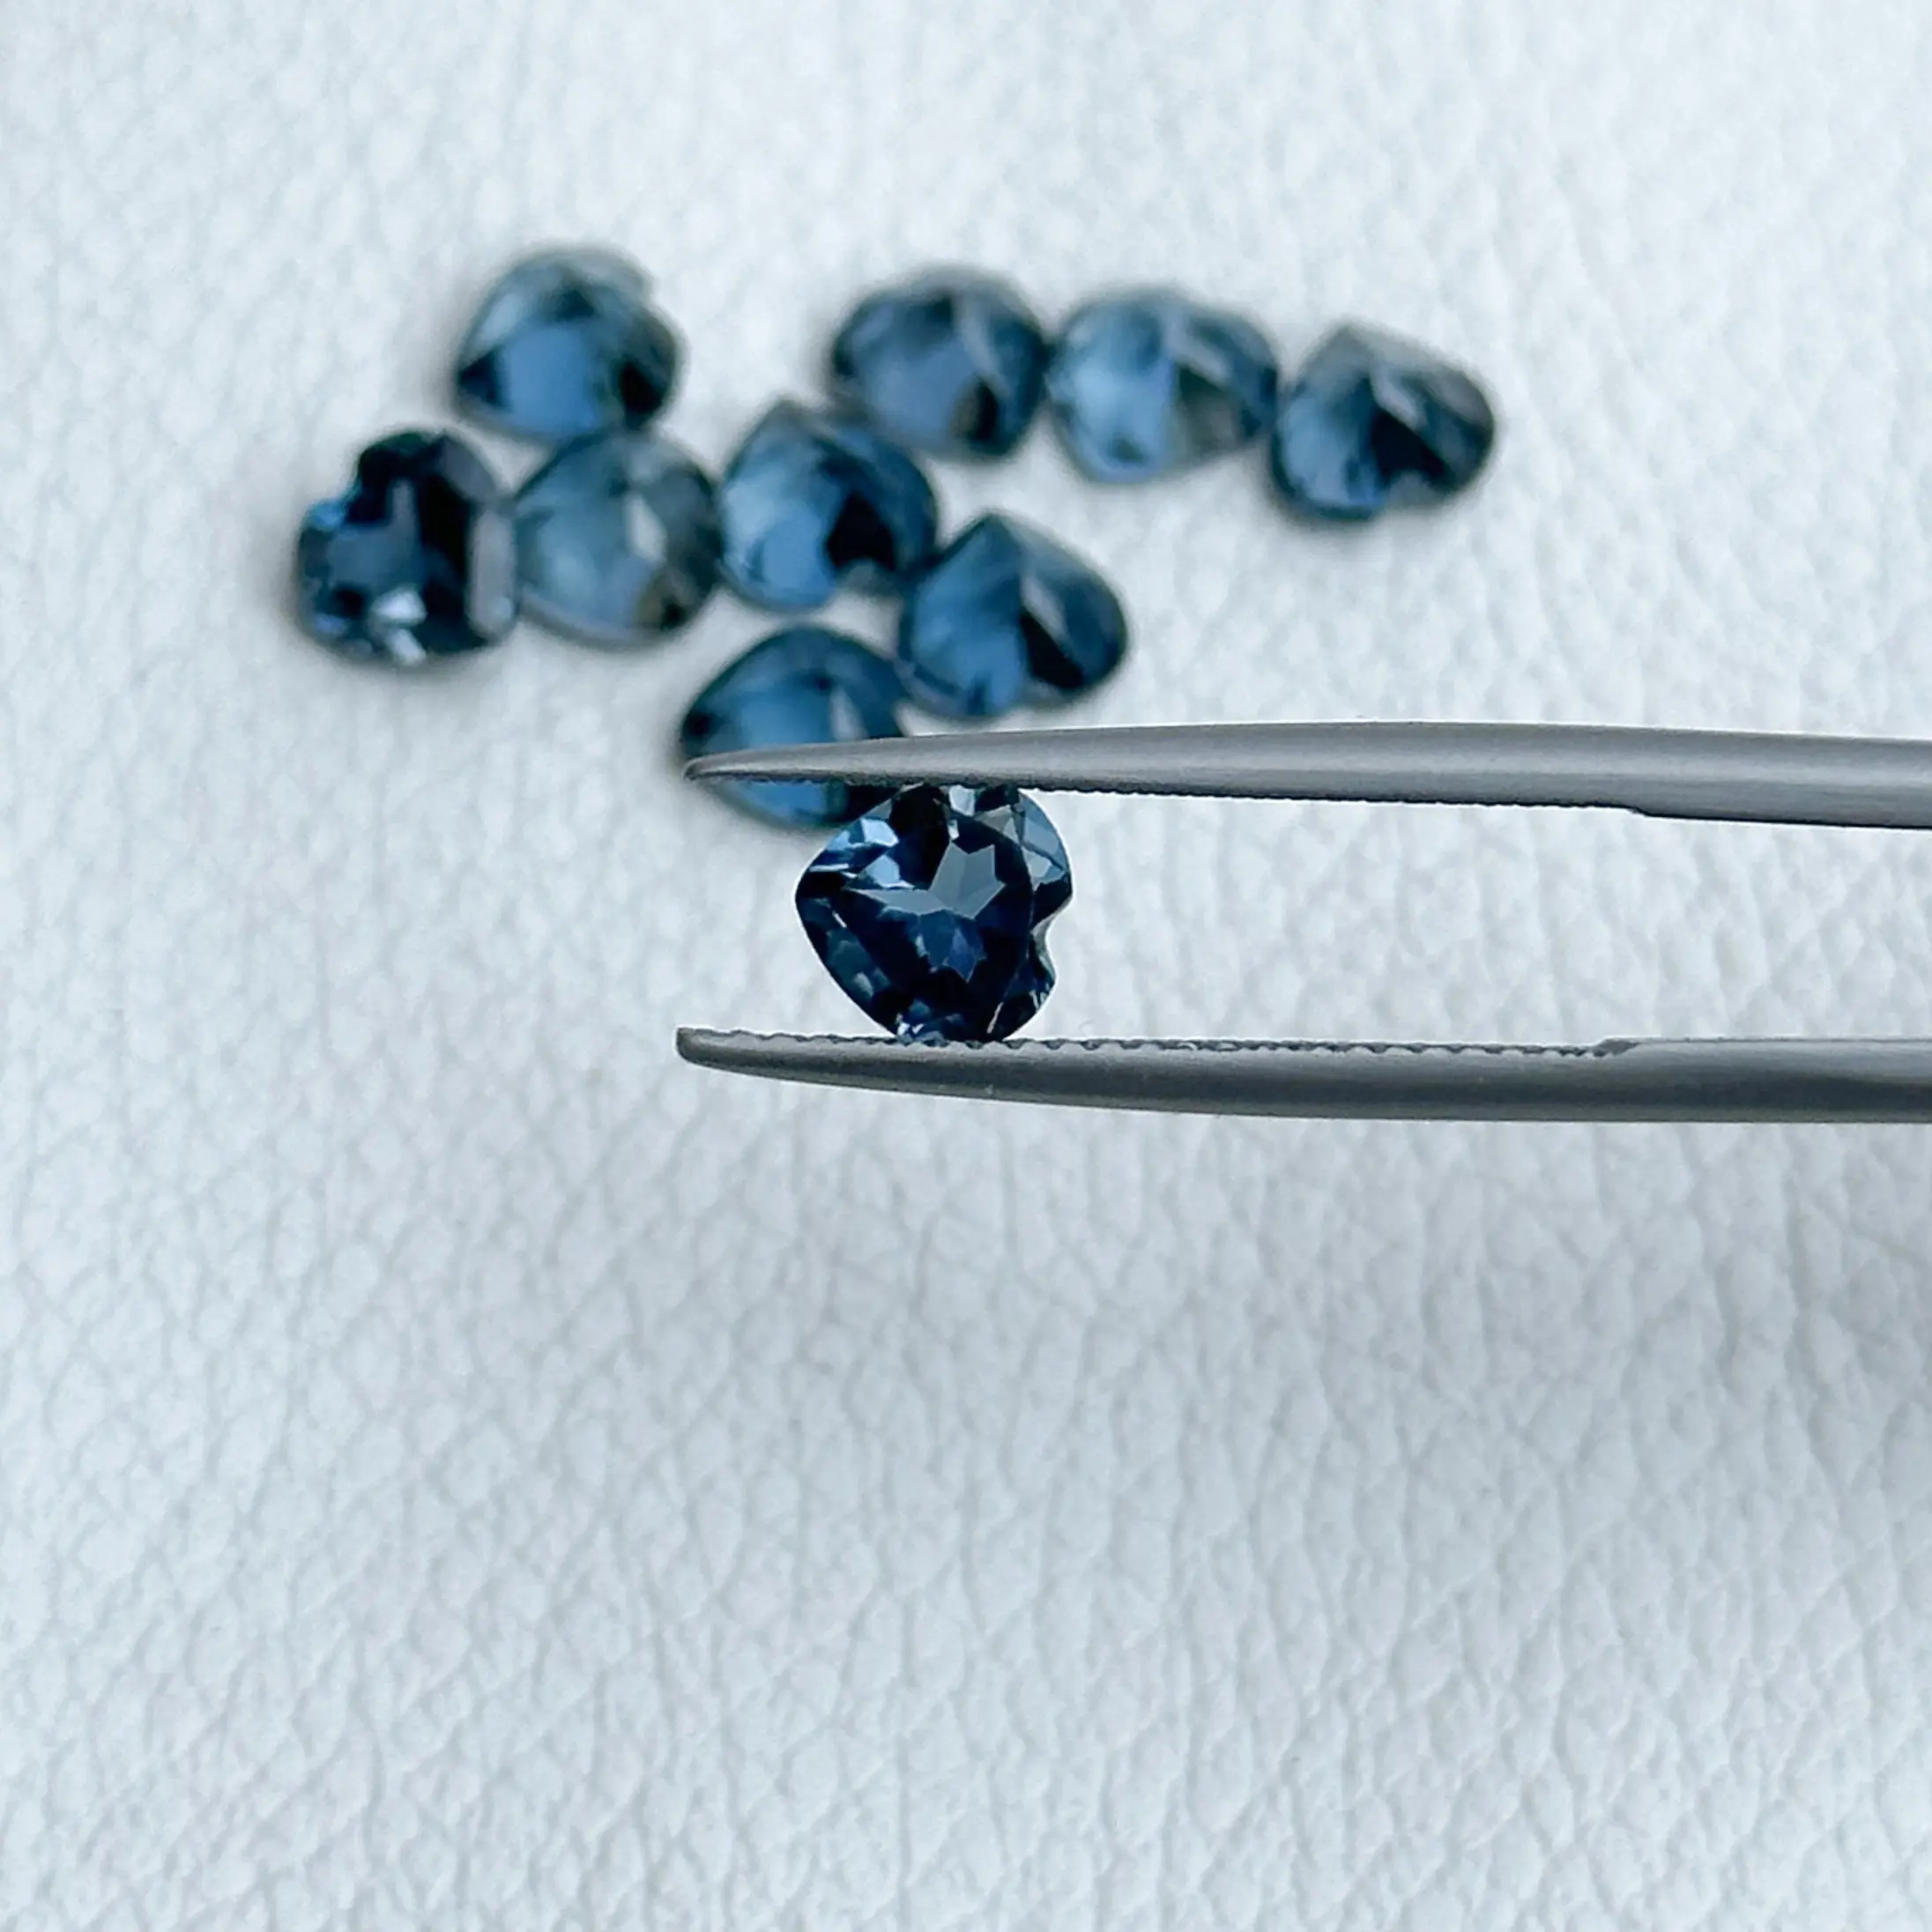 7mm London Blue Topaz batu permata longgar untuk produksi perhiasan potongan hati berfaset dari pemasok terverifikasi dengan pengiriman gratis